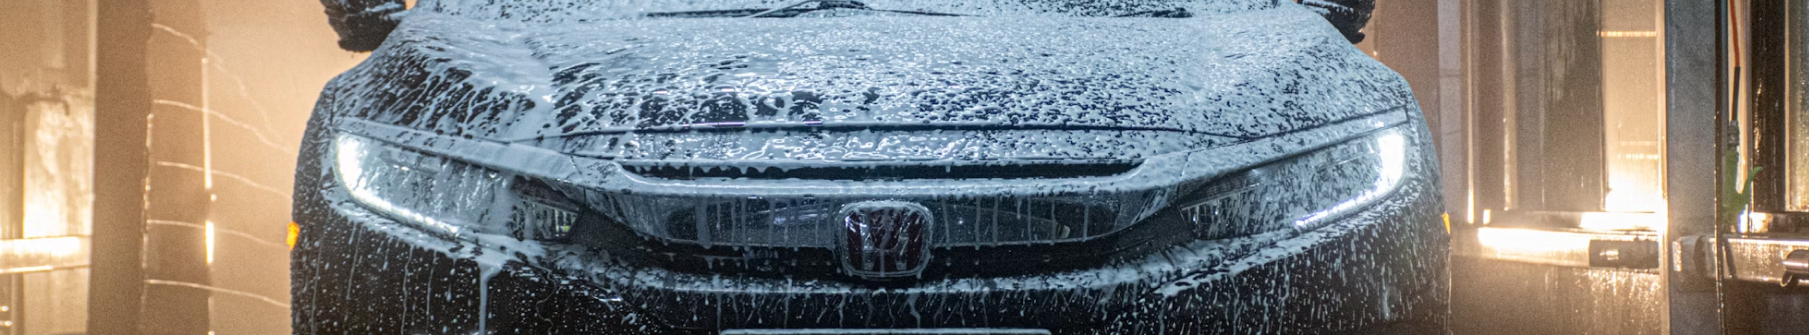 Как часто мыть машину зимой?